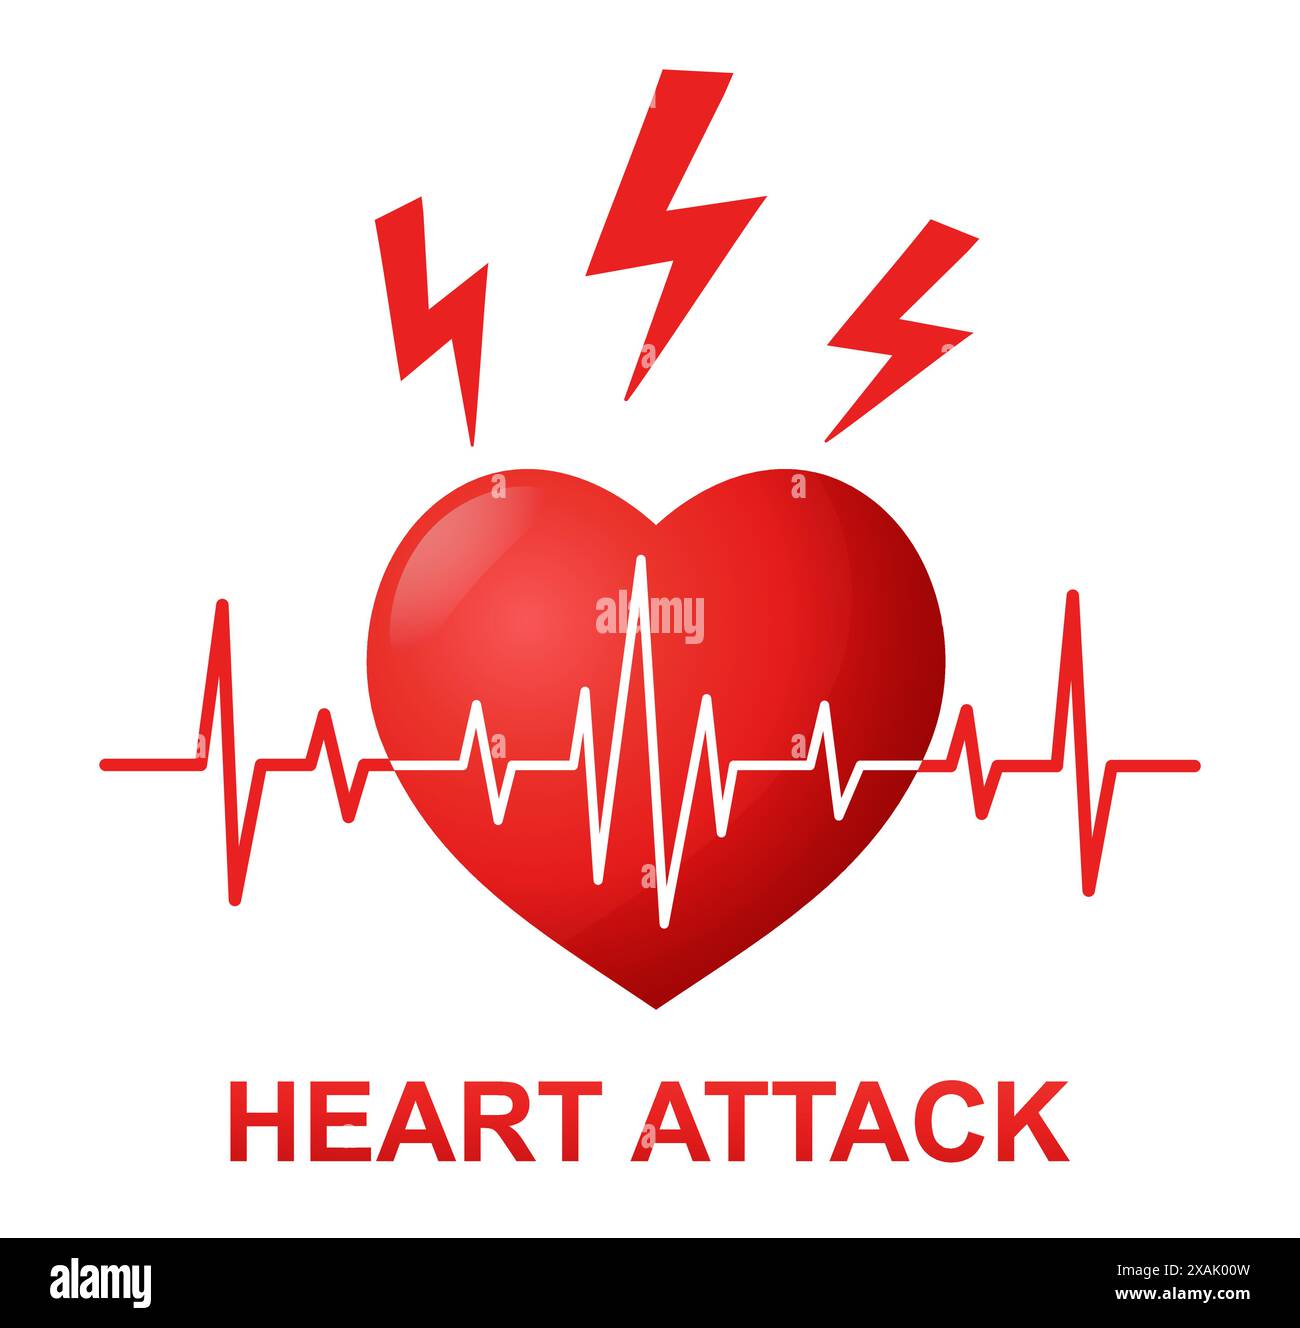 Herzinfarkt, Herzschlag Pulsrhythmus, Herzschmerzen, Herzinsuffizienz Schlaganfall, Behandlung von Herz-Kreislauf-Erkrankungen. Medizinisches EKG-Kardiogramm. Gesundheitssymbol Stock Vektor